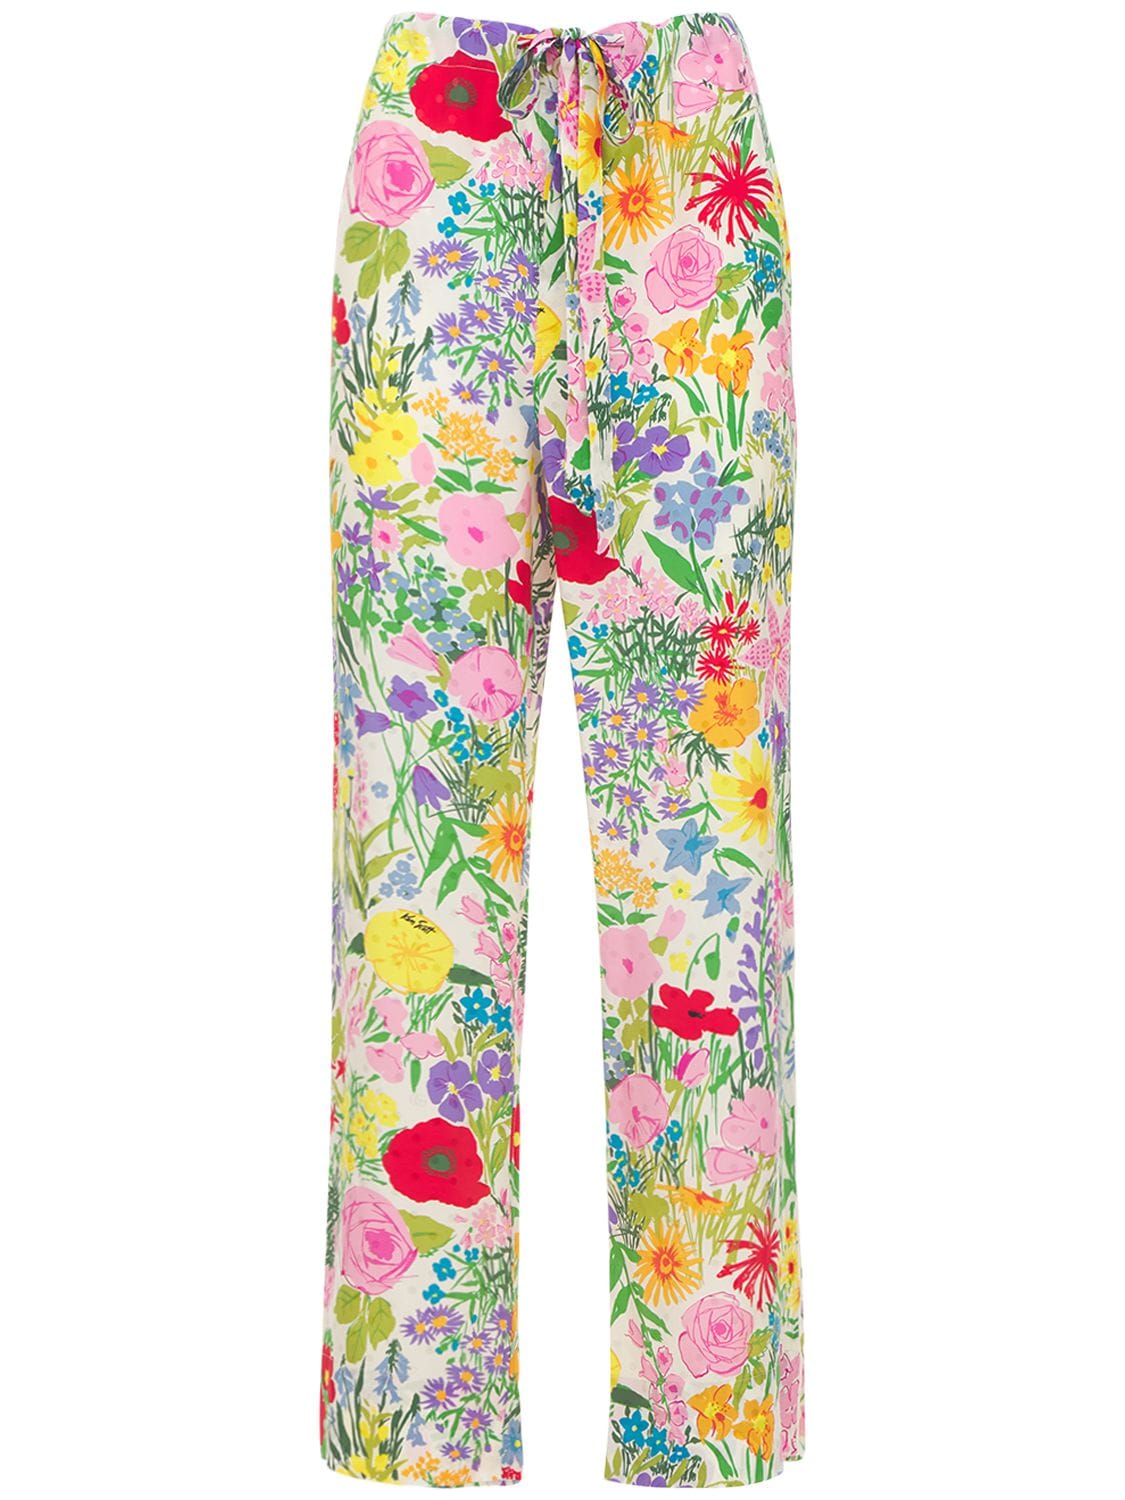 Garden Printed Jacquard Pajama Pants